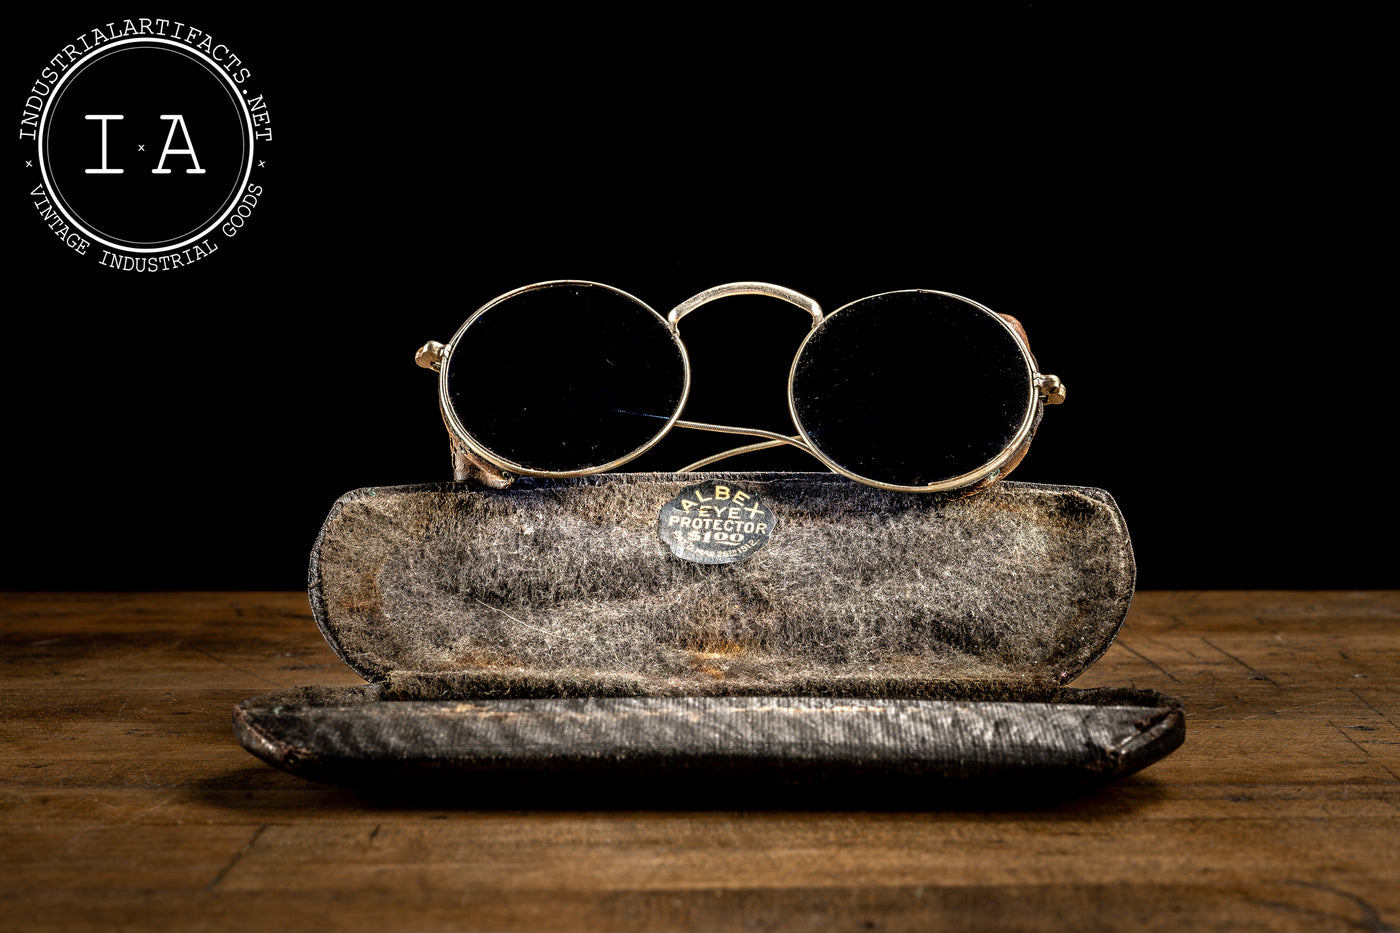 C. 1910 Albex Welding Glasses with Case